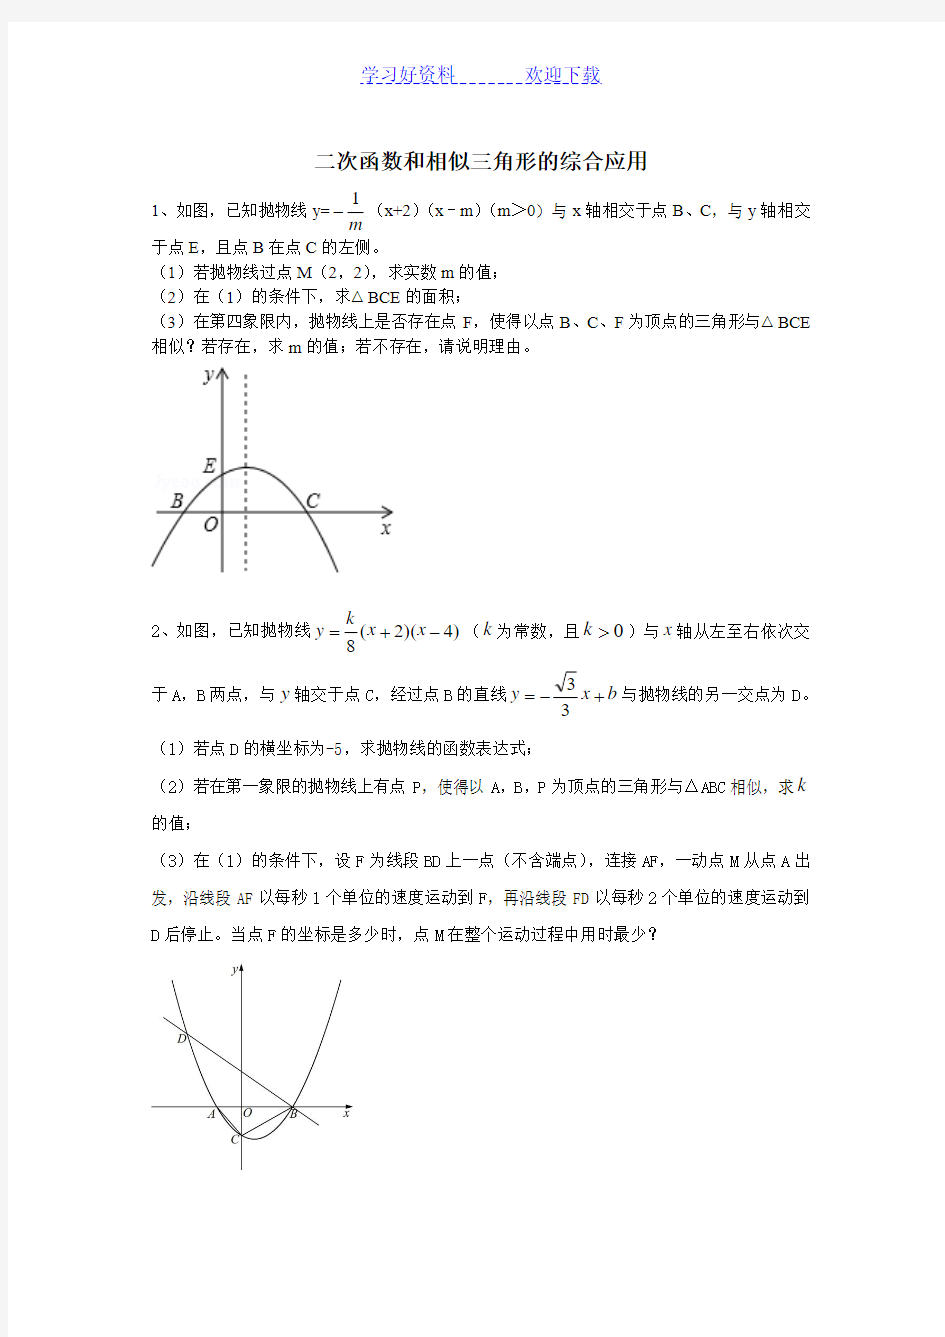 二次函数和相似三角形的综合应用